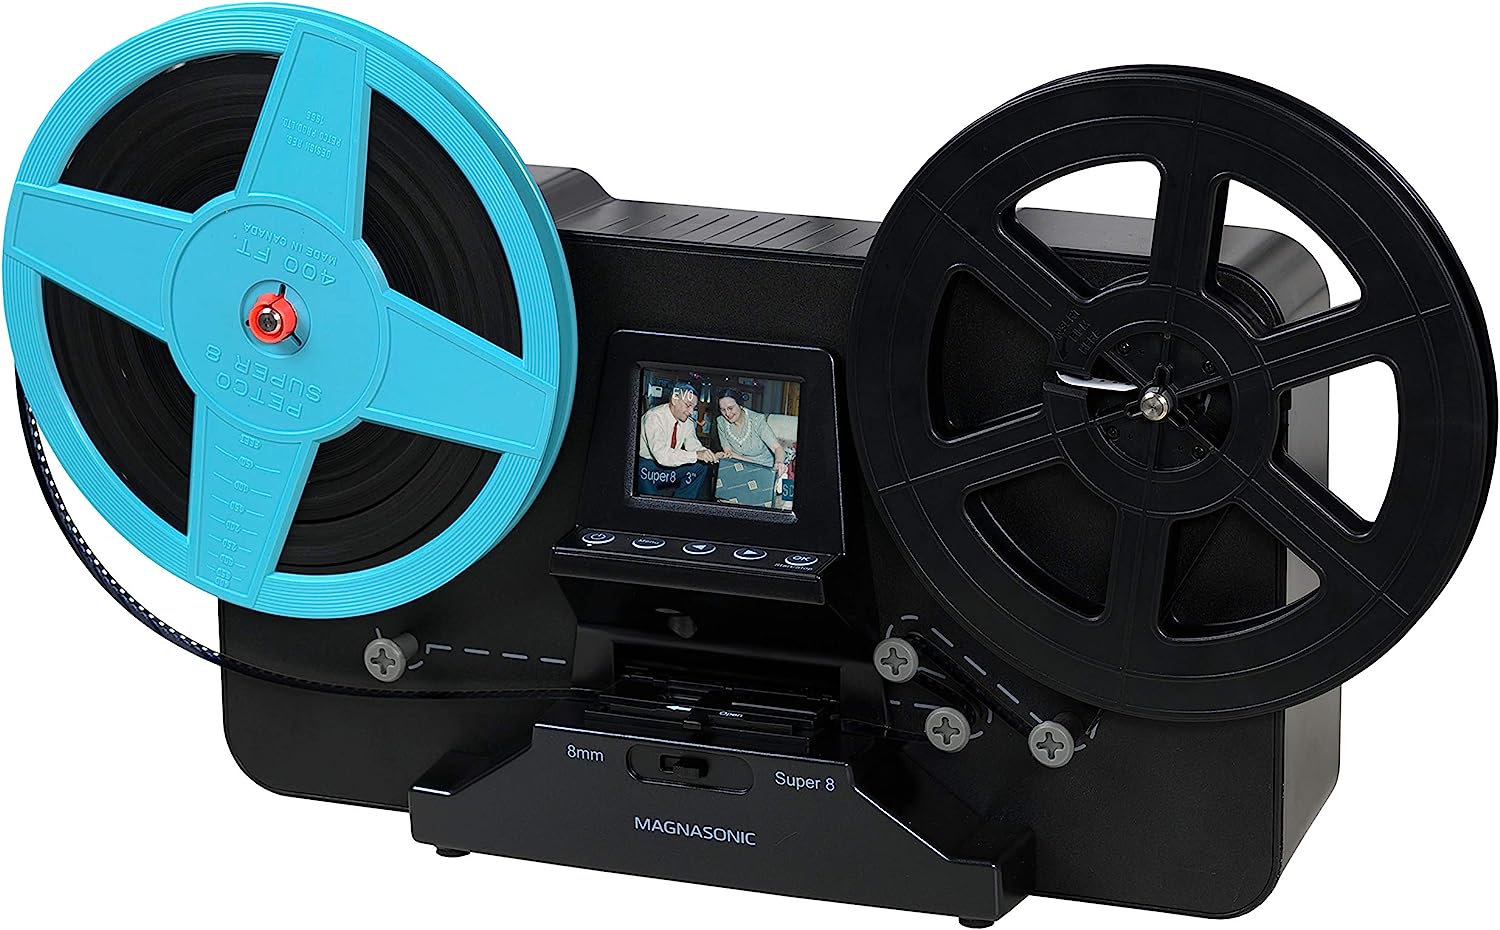 Magnasonic Super 8/8mm Film Scanner, Converts Film [...]